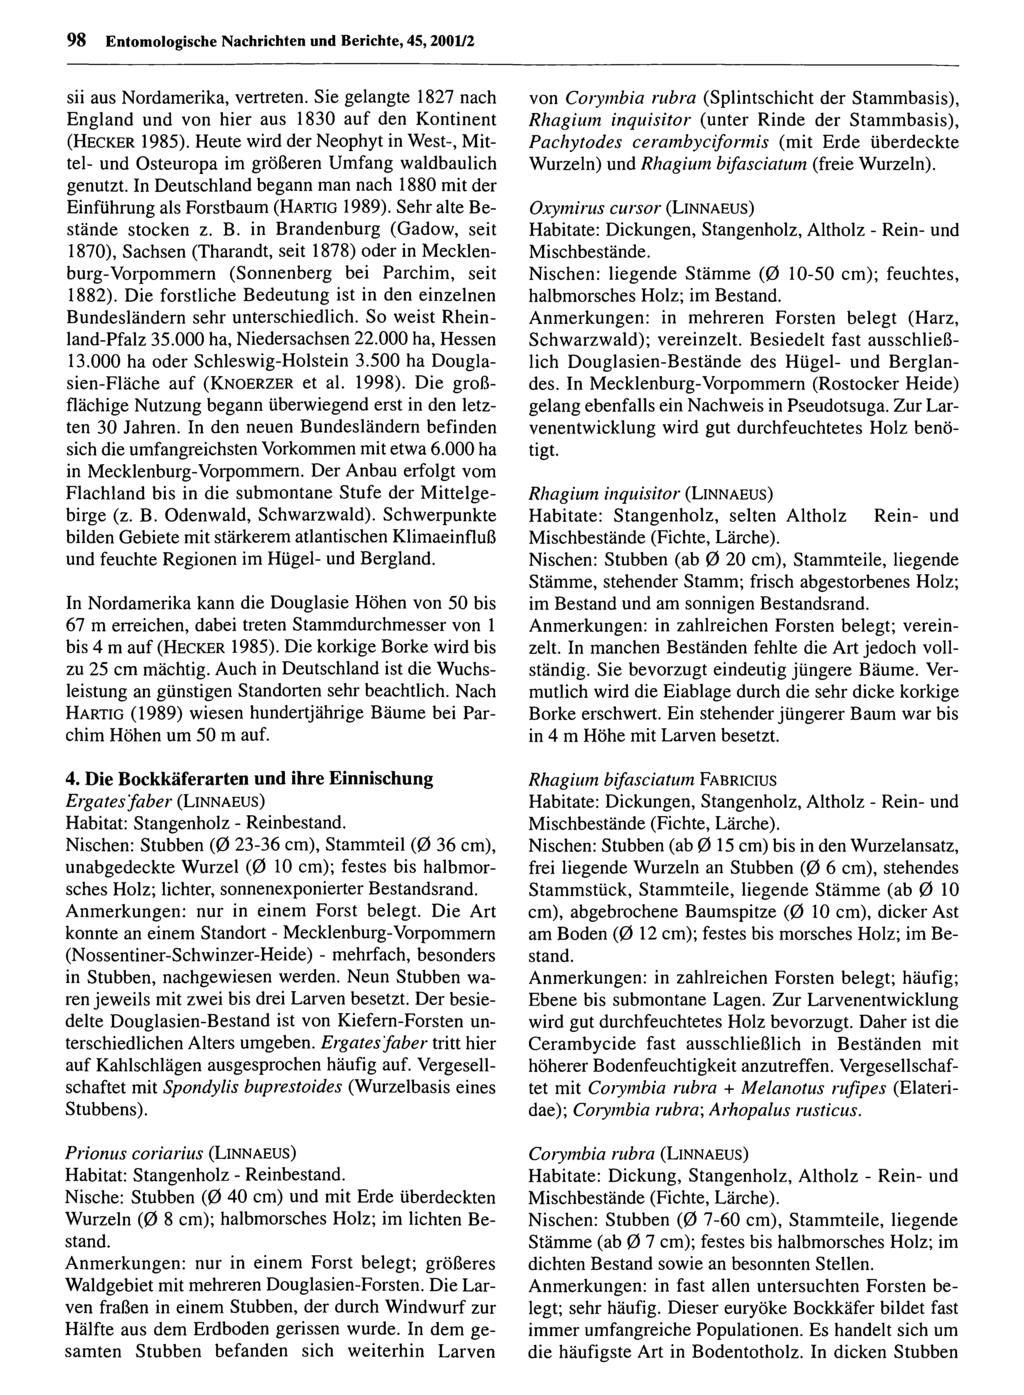 98 Entomologische Nachrichten Entomologische und Berichte, Nachrichten 45,2001/2 und Berichte; download unter www.biologiezentrum.at sii aus Nordamerika, vertreten.